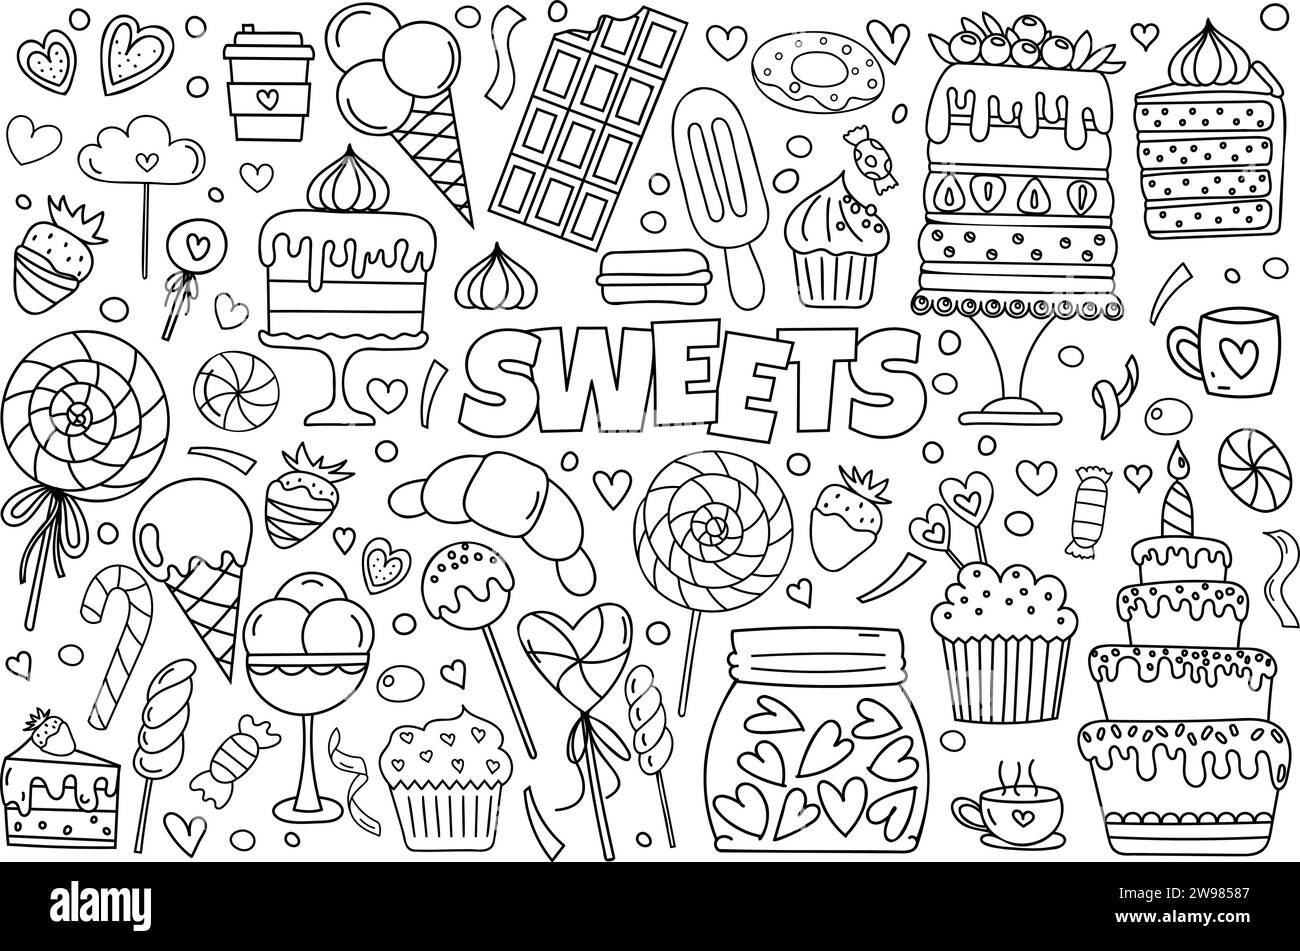 Ensemble de Doodle vectoriel dessiné à la main présente Un thème de page de coloriage anti-stress de bonbons, y compris une gamme de gâteaux, bonbons, cupcakes, crème glacée, et plus encore, ce qui en fait Un livre de coloriage mignon Illustration de Vecteur